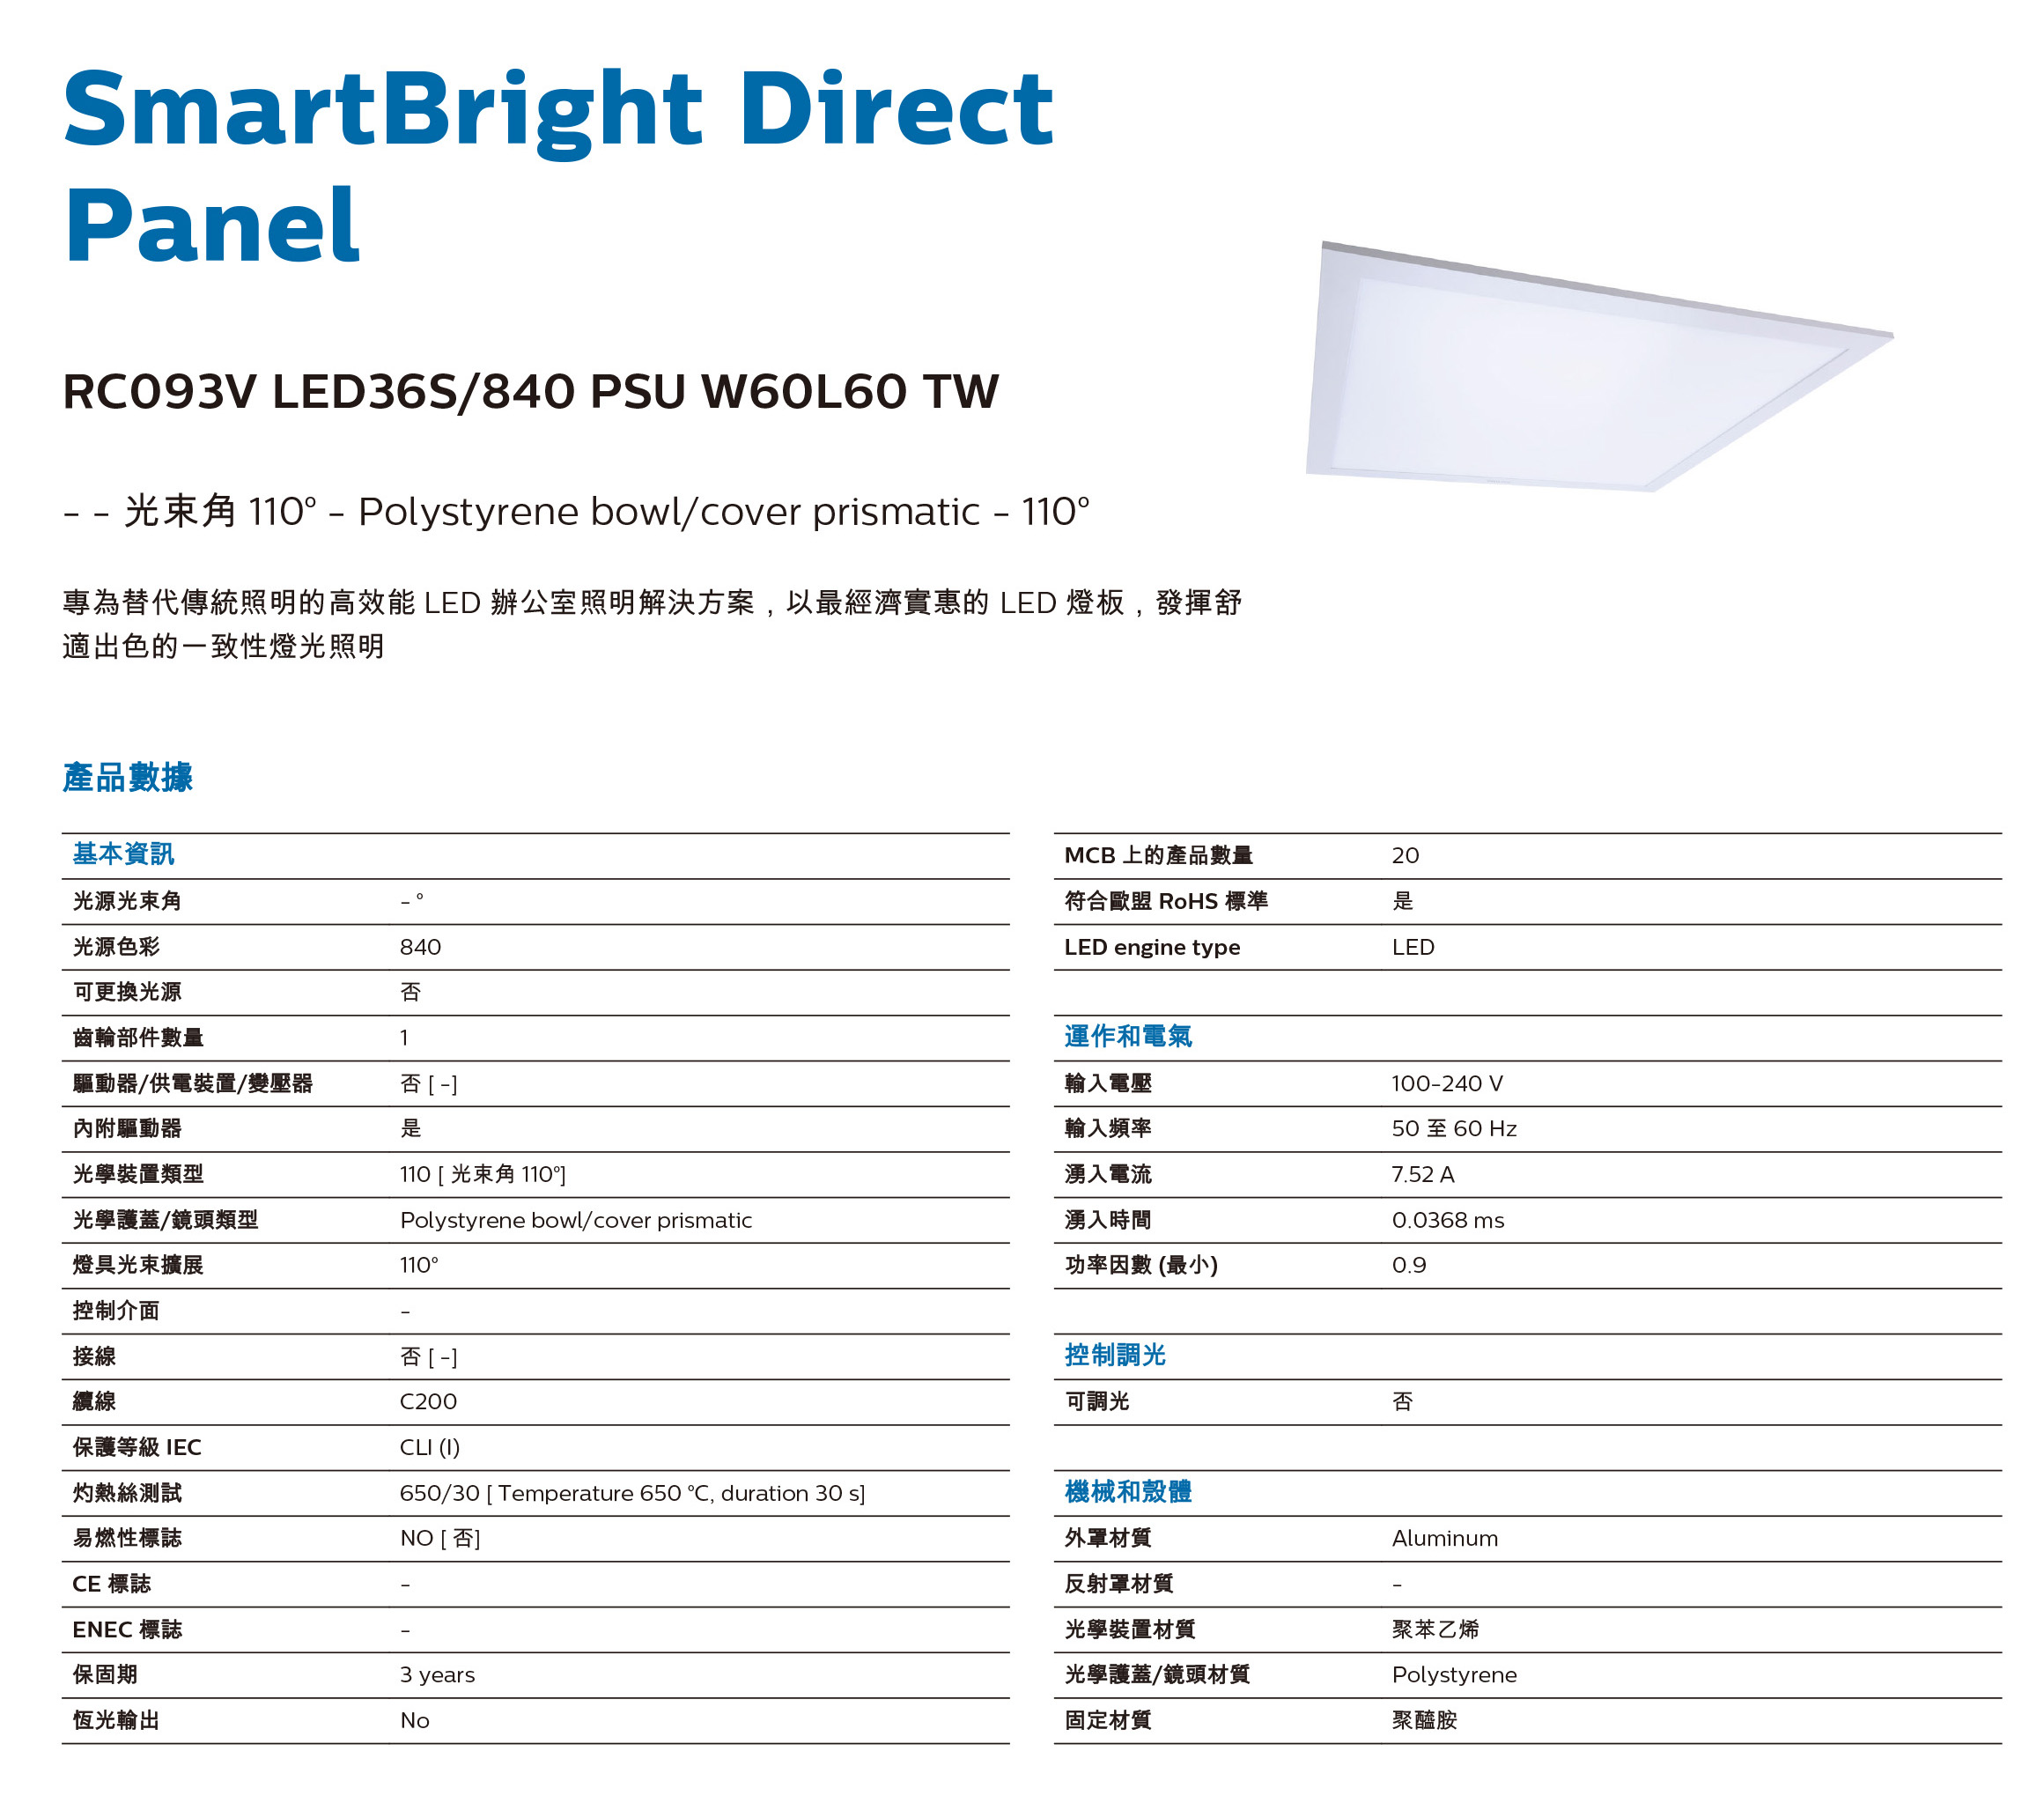 lighting philips RC093V LED 平板燈